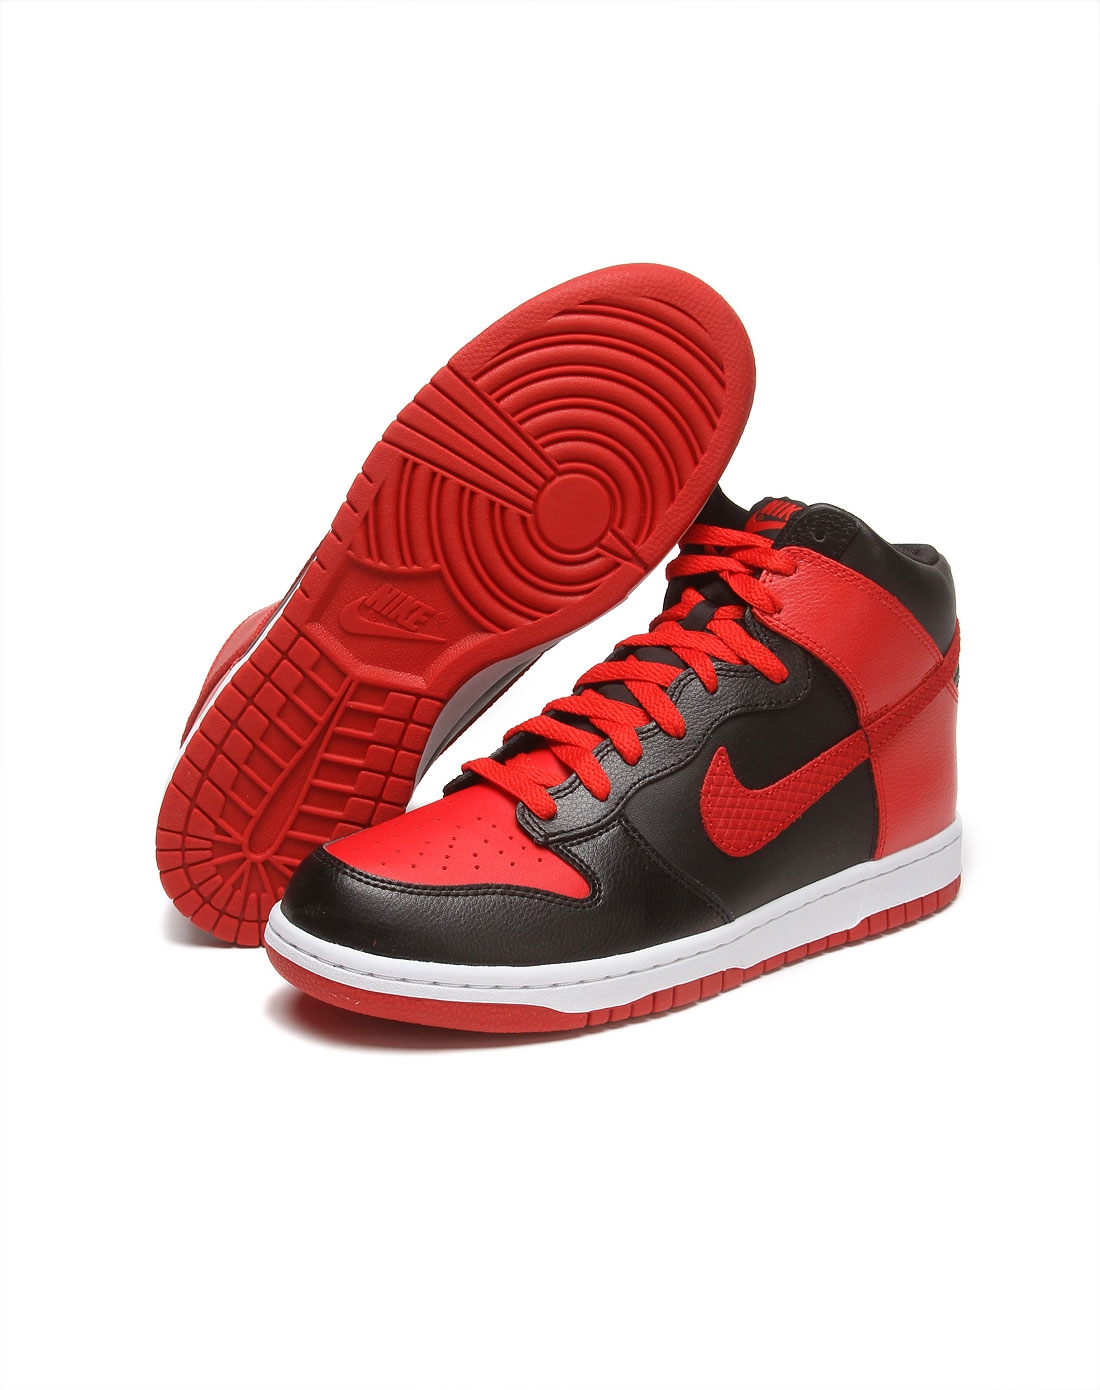 红色运动鞋跑步鞋图片素材-编号39019067-图行天下